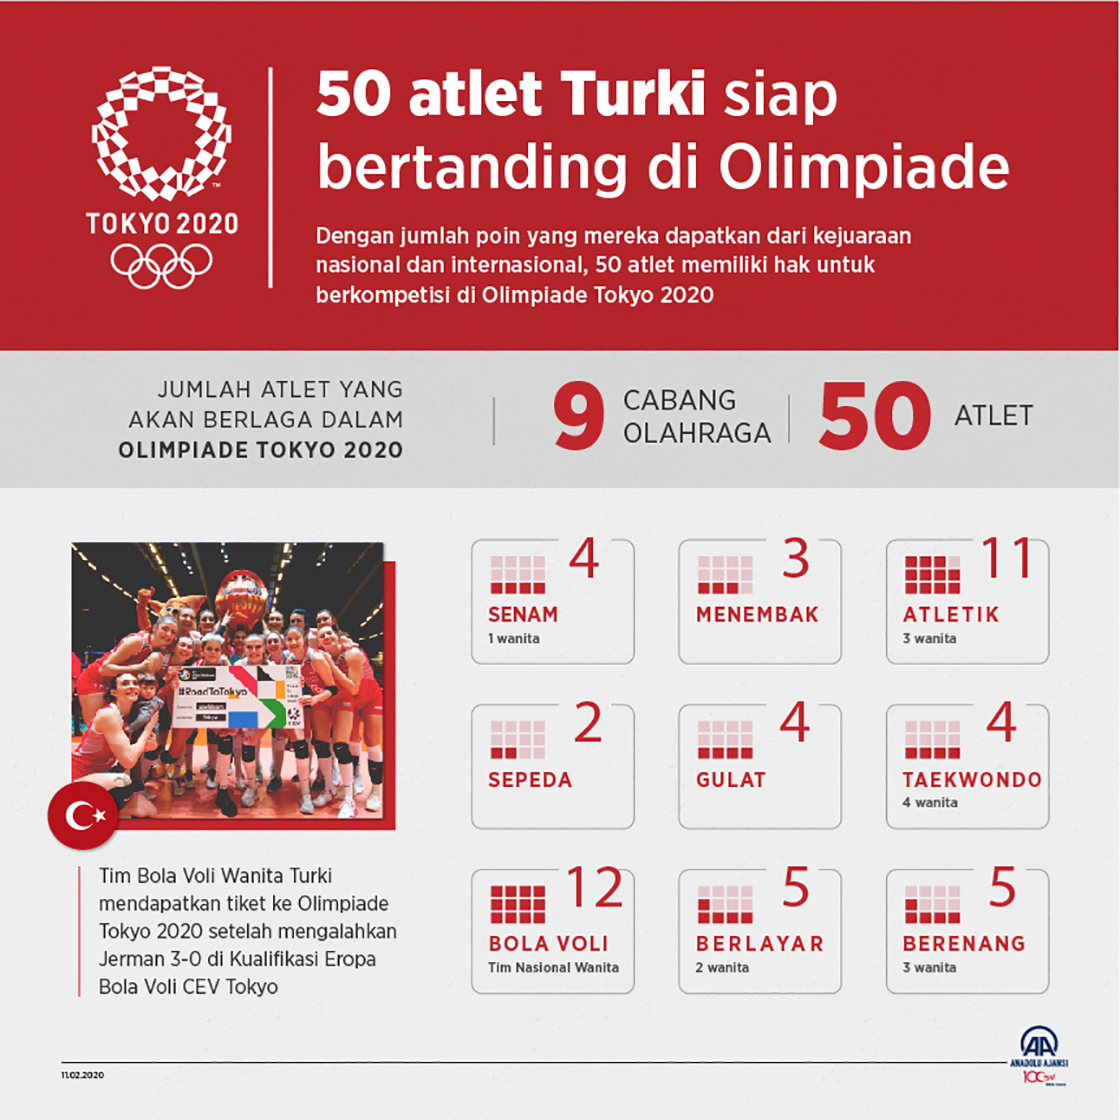 50 atlet Turki siap bertanding 